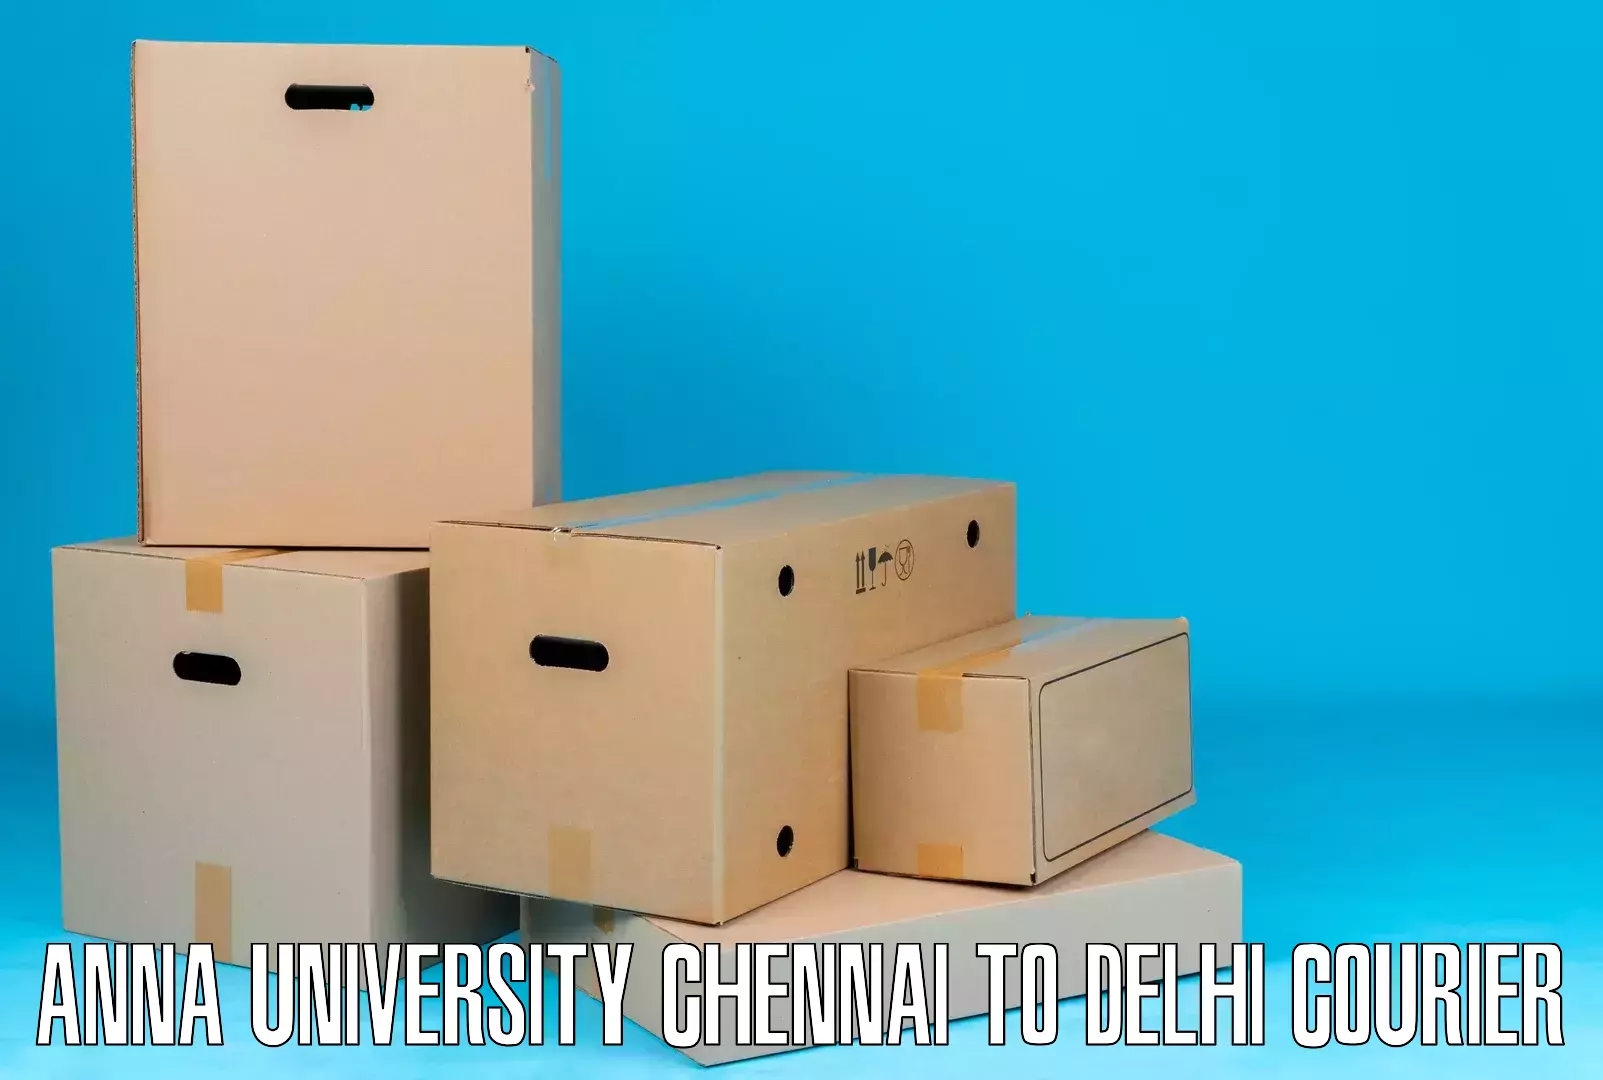 Large package courier Anna University Chennai to Jamia Millia Islamia New Delhi